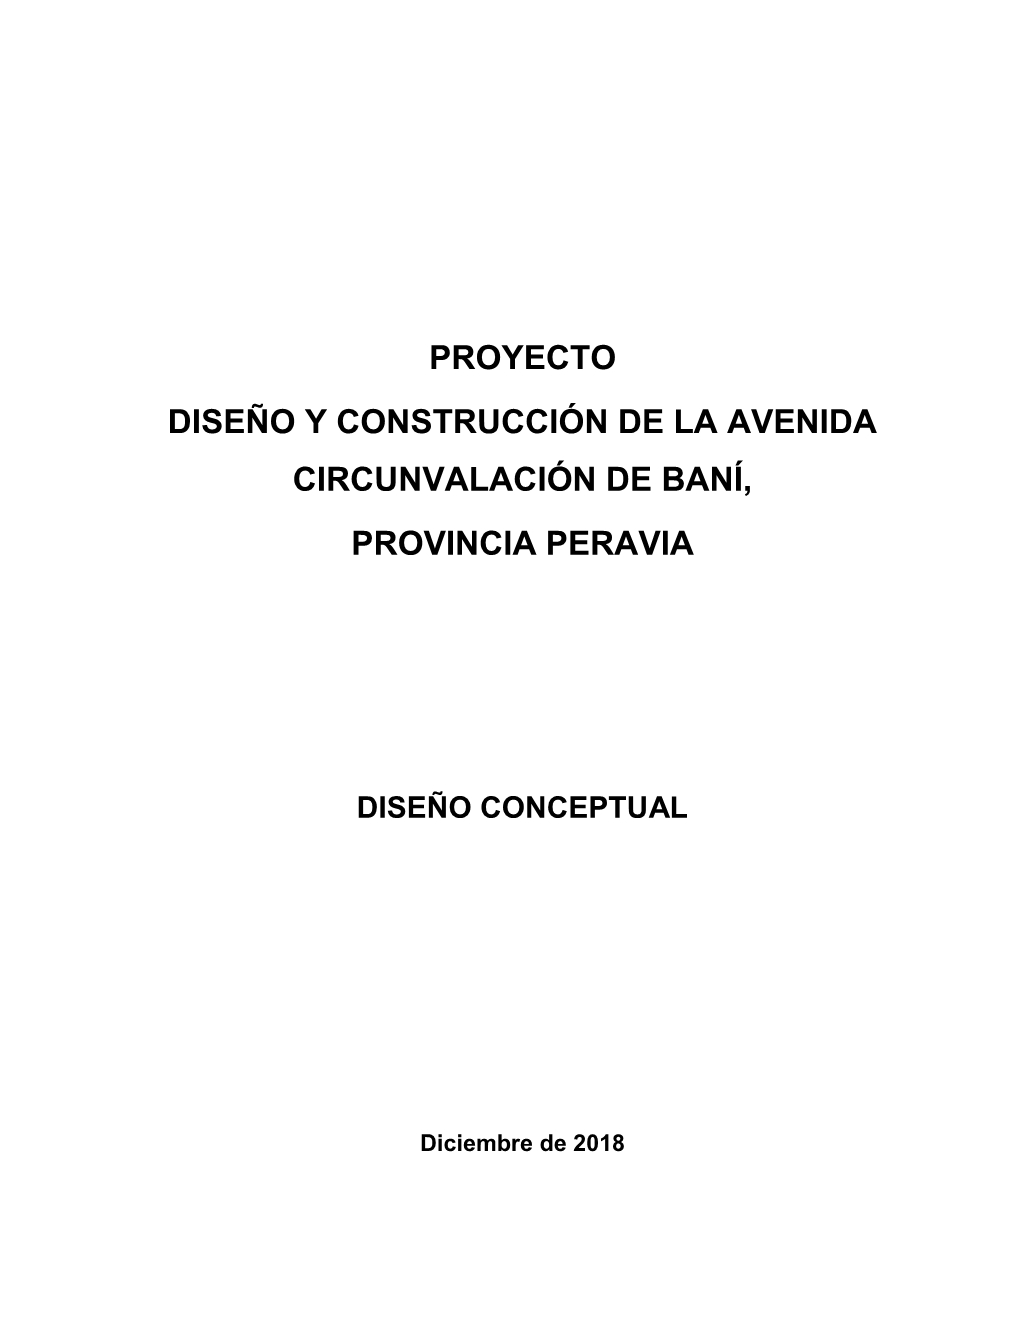 Proyecto Diseño Y Construcción De La Avenida Circunvalación De Baní, Provincia Peravia